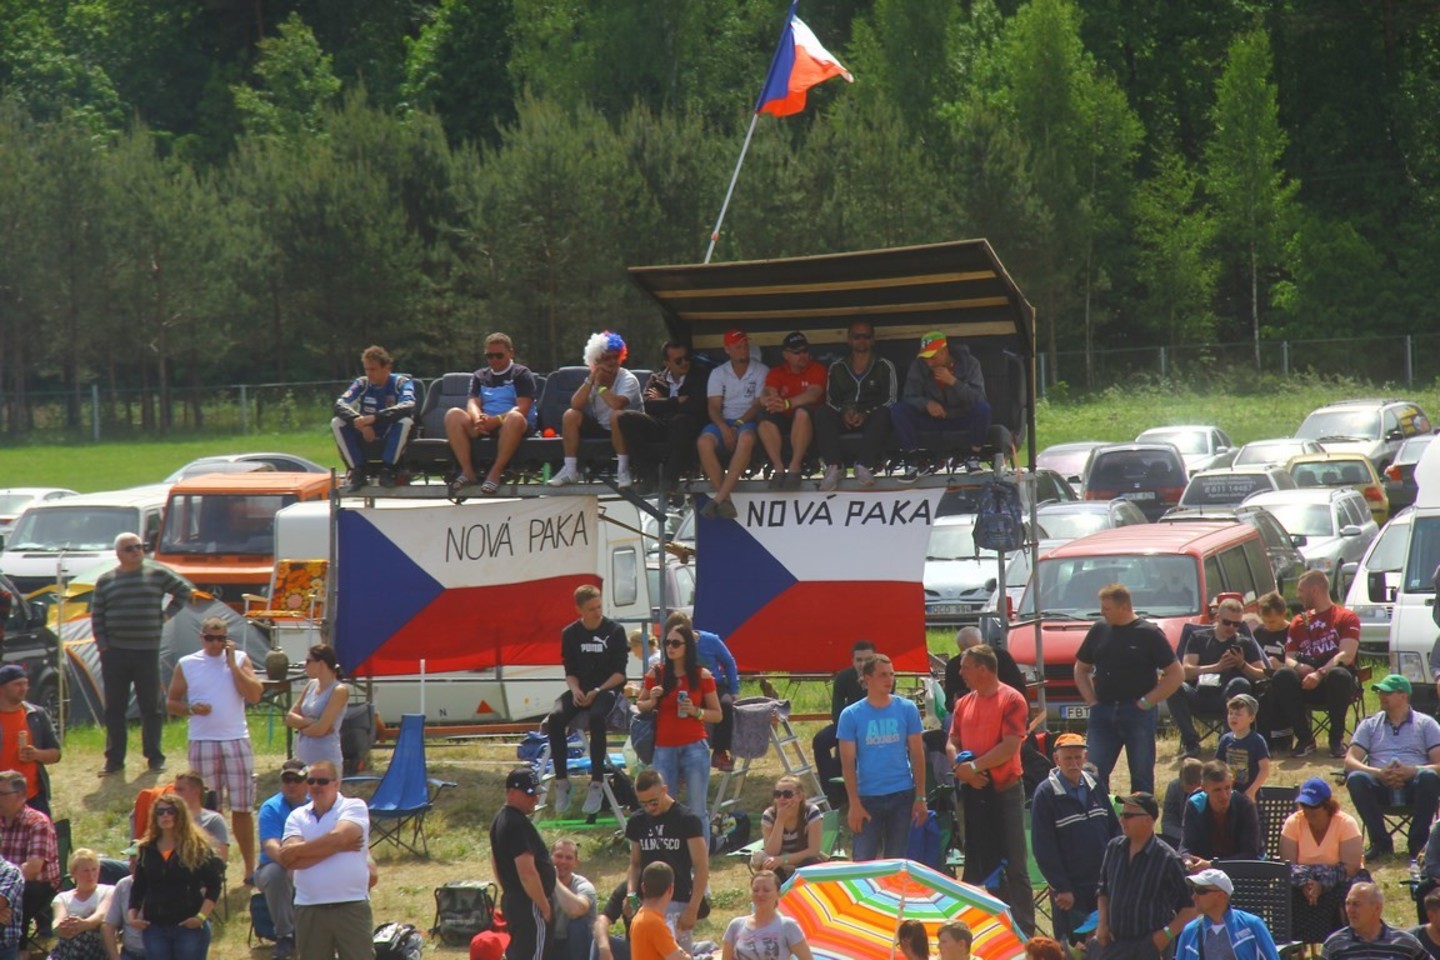  Vilkyčiuose įvyko antrasis Europos autokroso čempionato etapas.<br> Organizatorių nuotr.